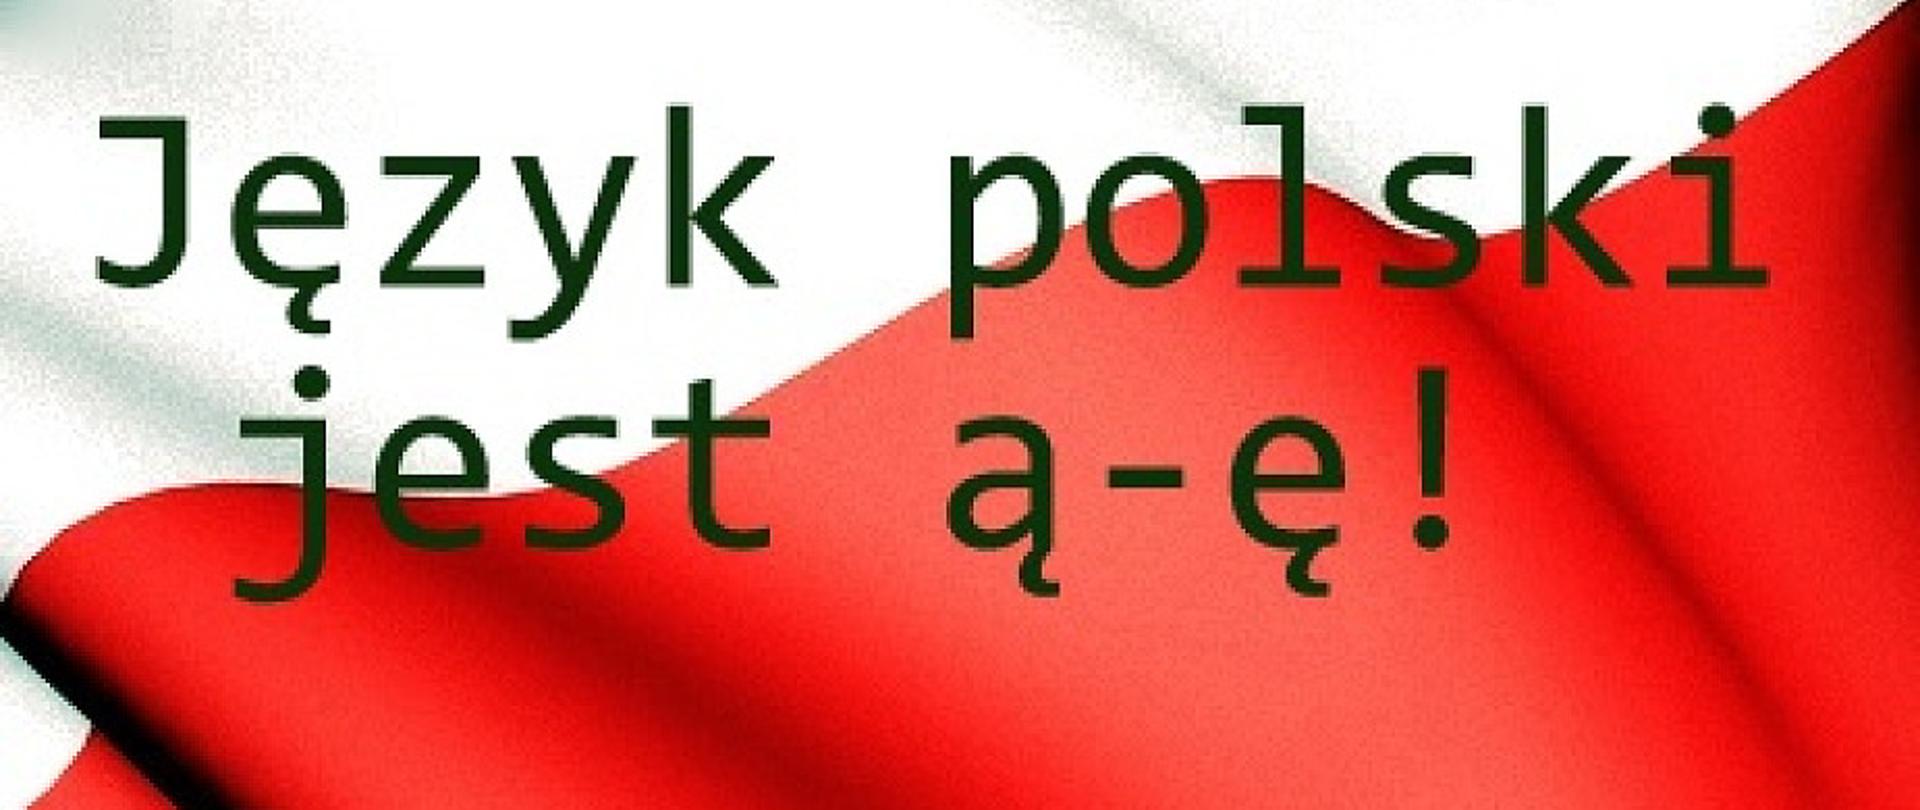 jezyk-polski-jest-a-e-bronmy-jezyka-polskiego